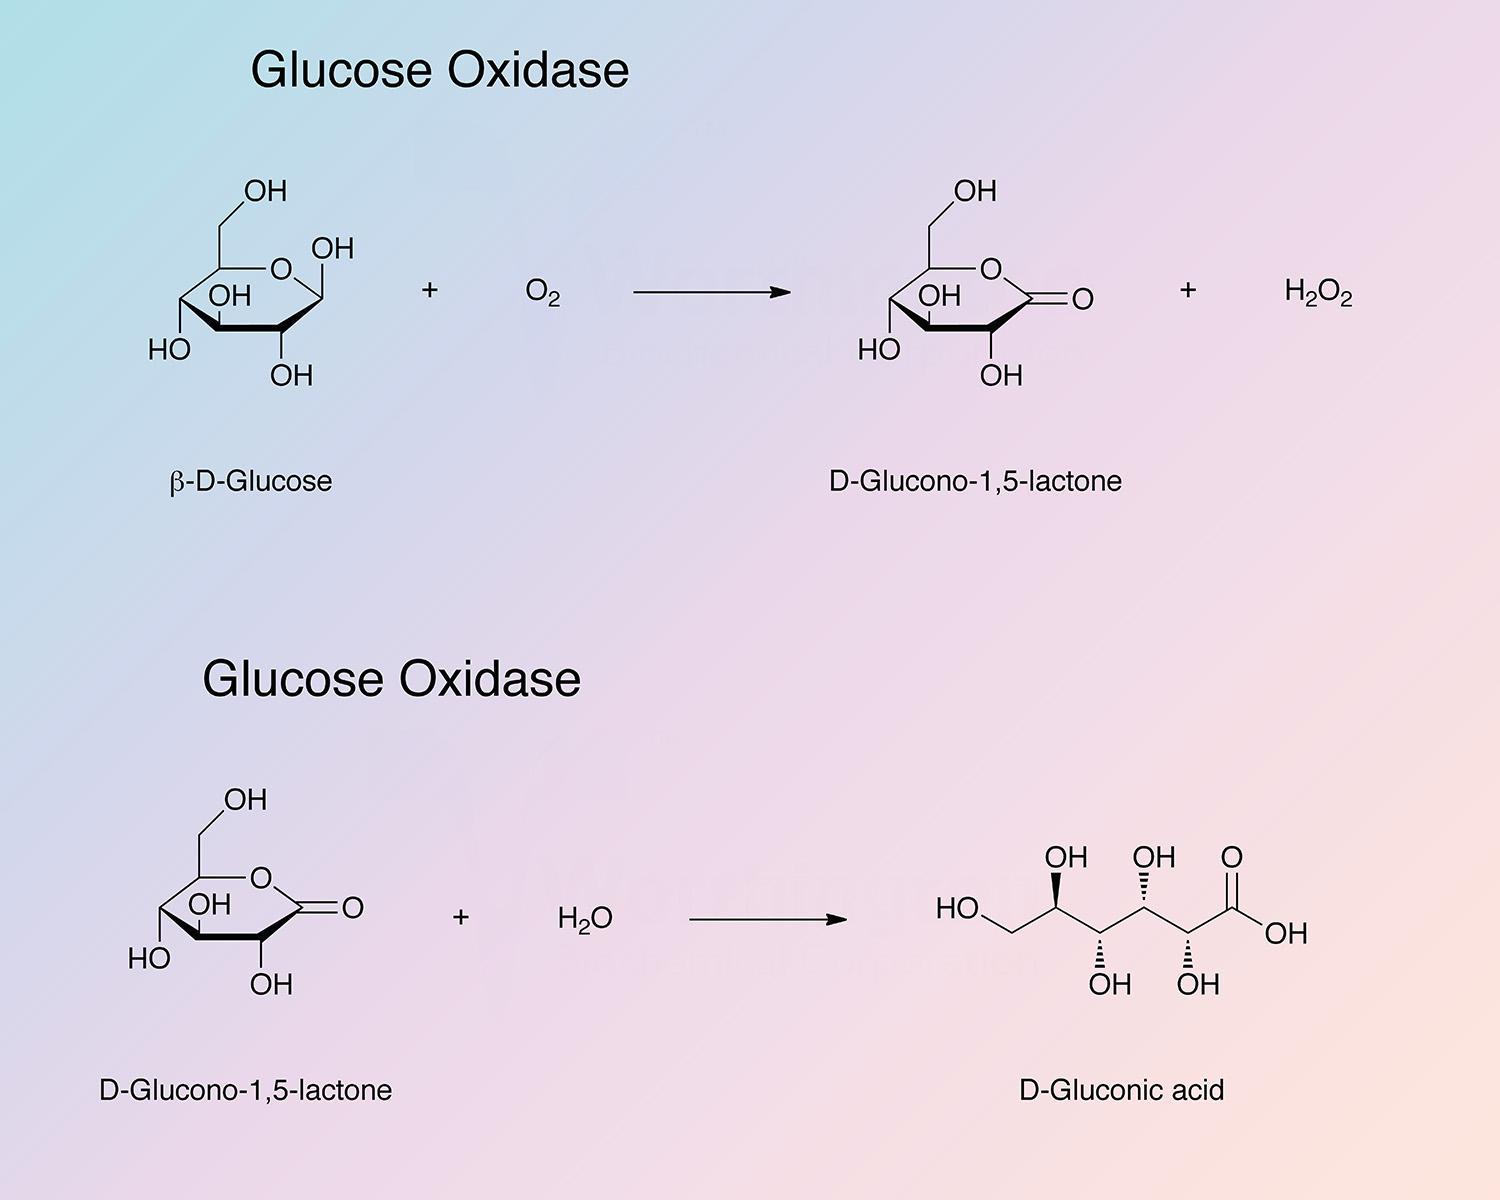 Glucose Oxidase Enzymatic Reaction